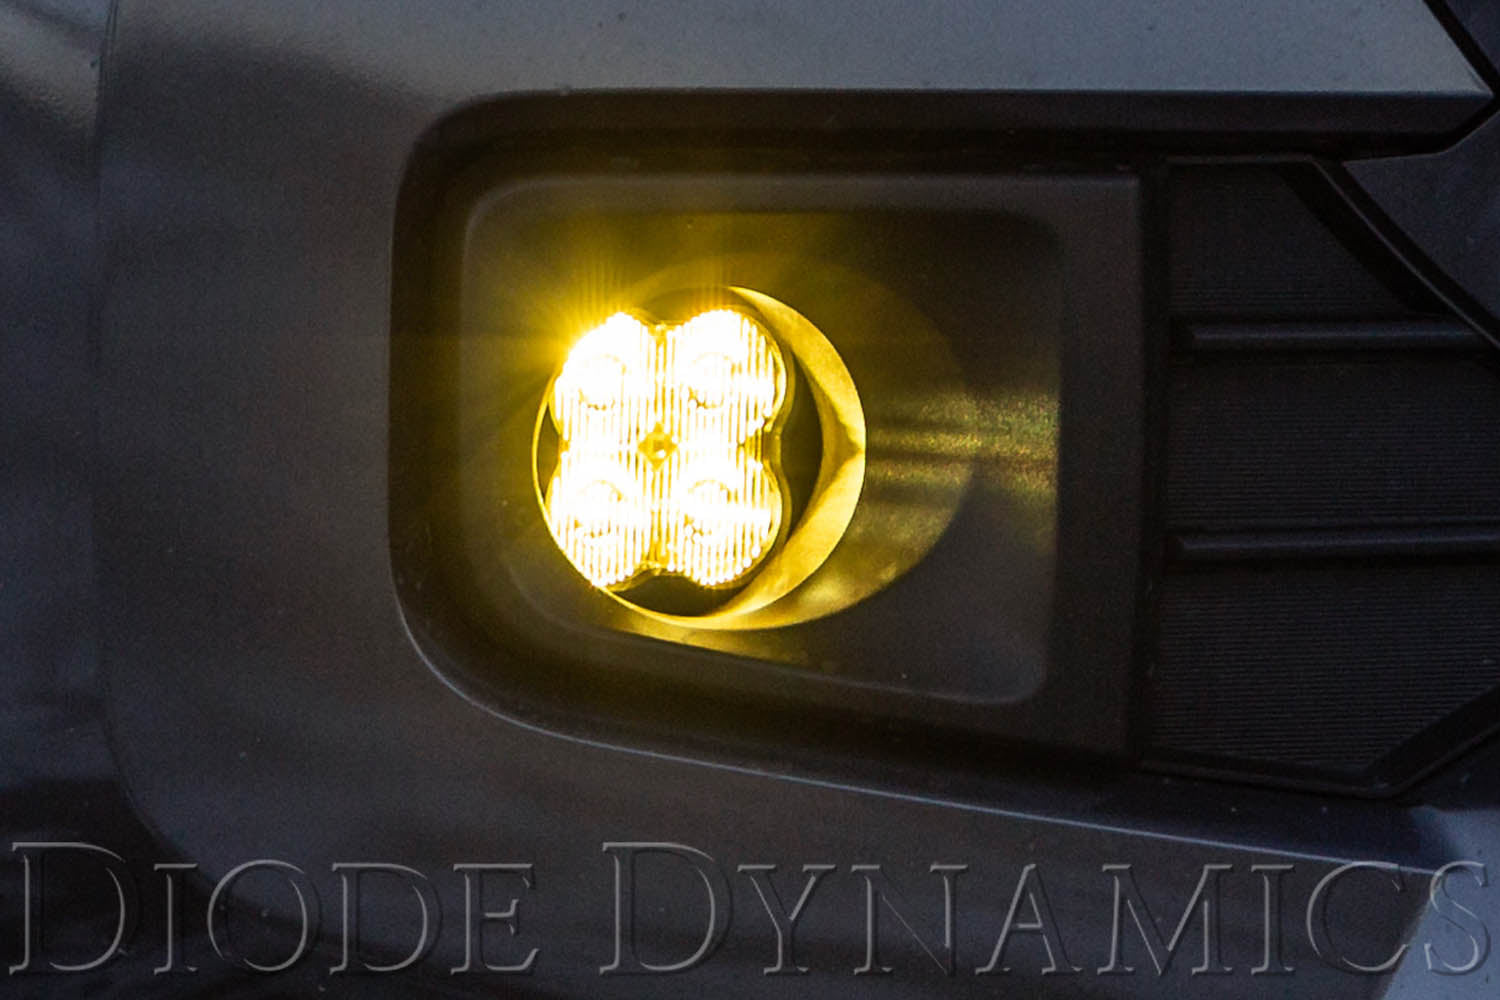 SS3 LED Fog Light Kit for 2008-2015 Lexus LX570 Yellow SAE Fog Sport Diode Dynamics